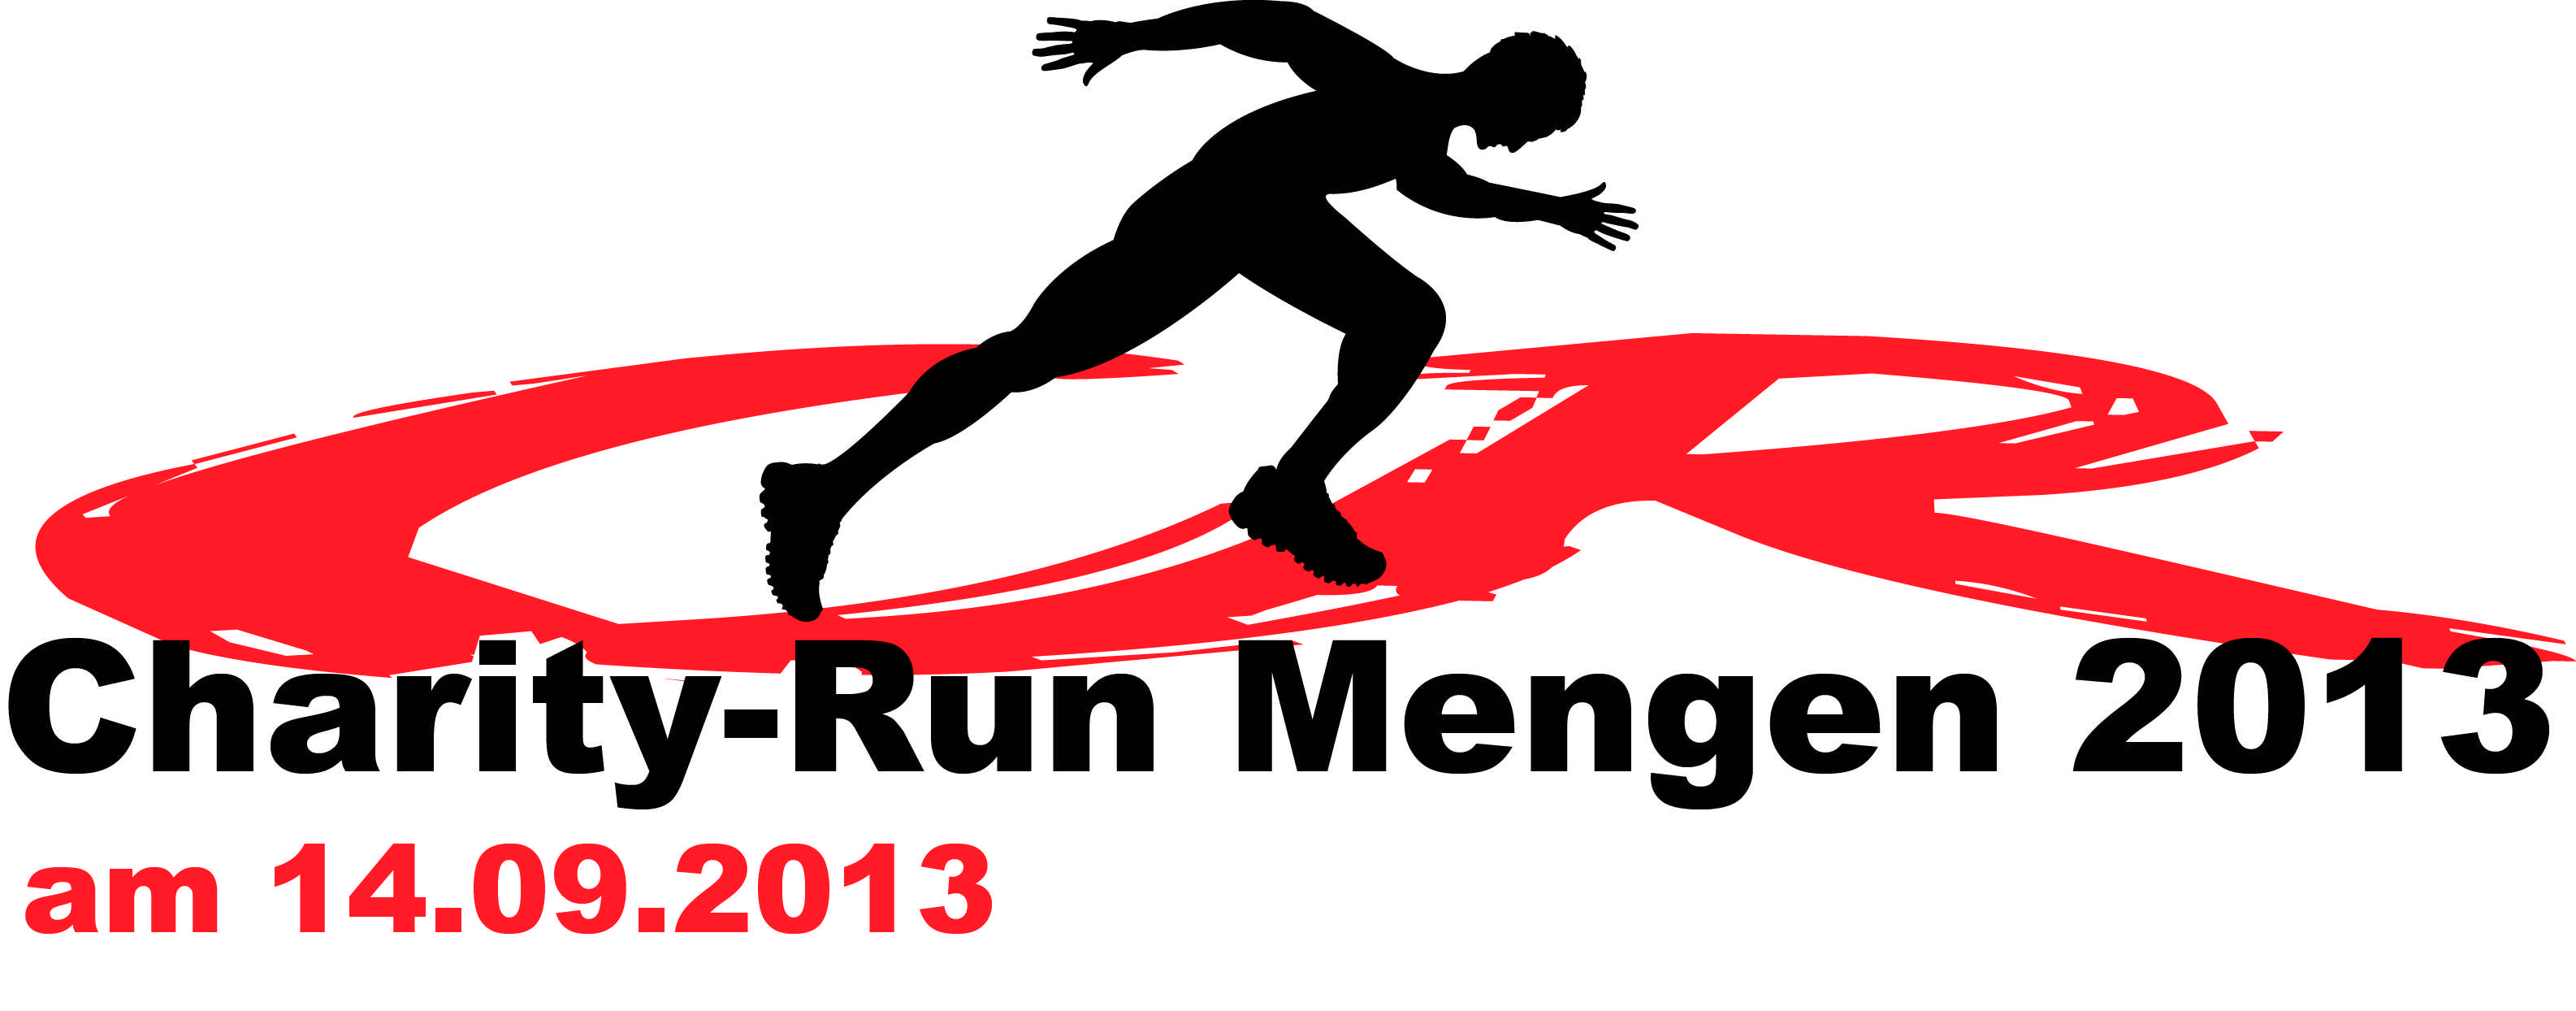 charity-run 2013 logo 1